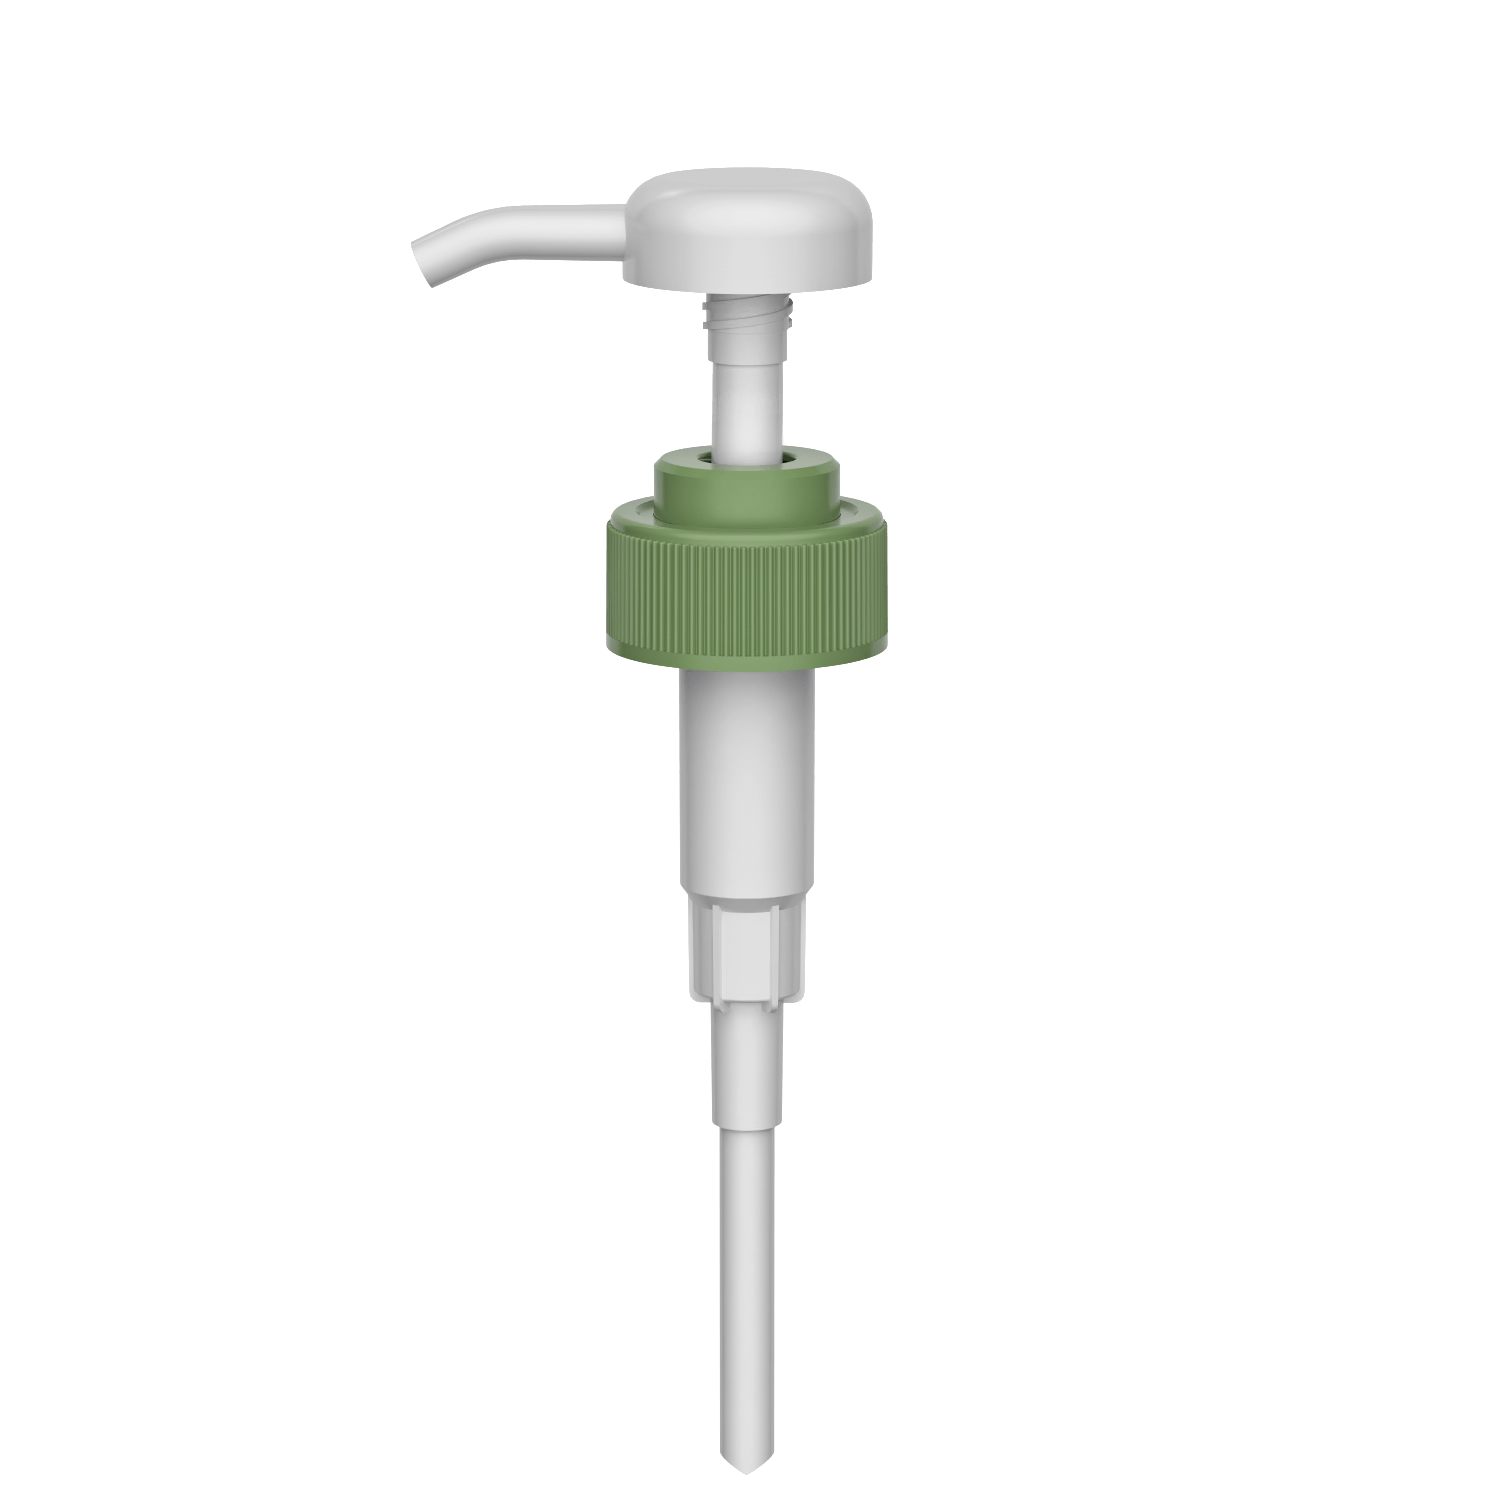 HD-608C 31/410 Schraube hohe Dosierung Waschen Shampoo Ausgabe Spender 3.5-4.0CC Lotion Pumpe